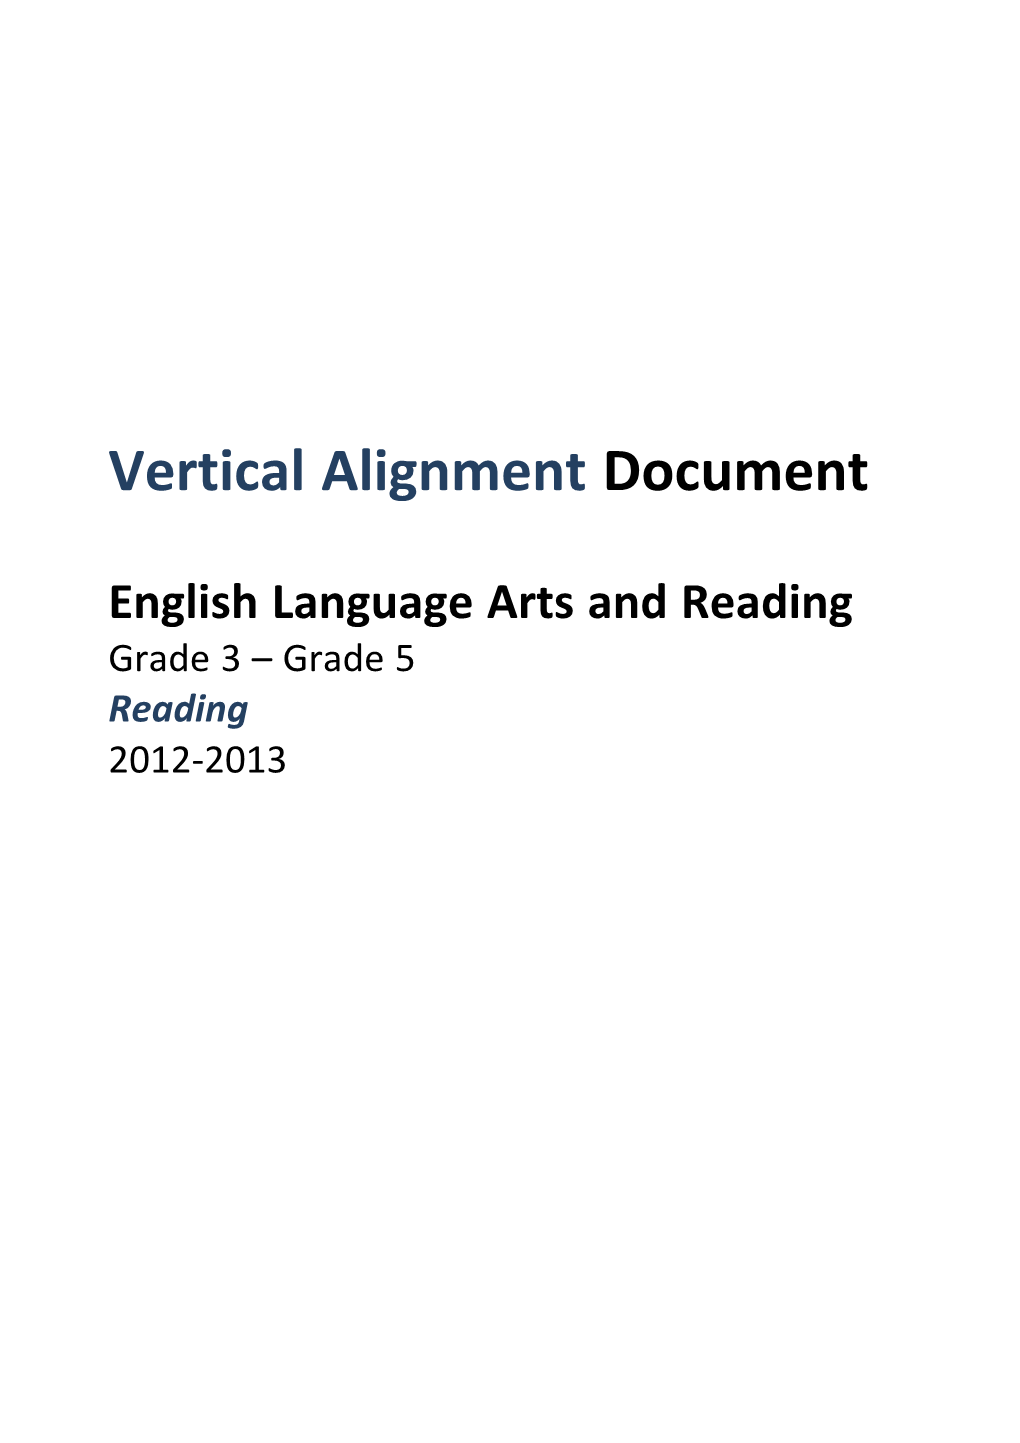 Grades 03-05 ELAR VAD Reading 10-11